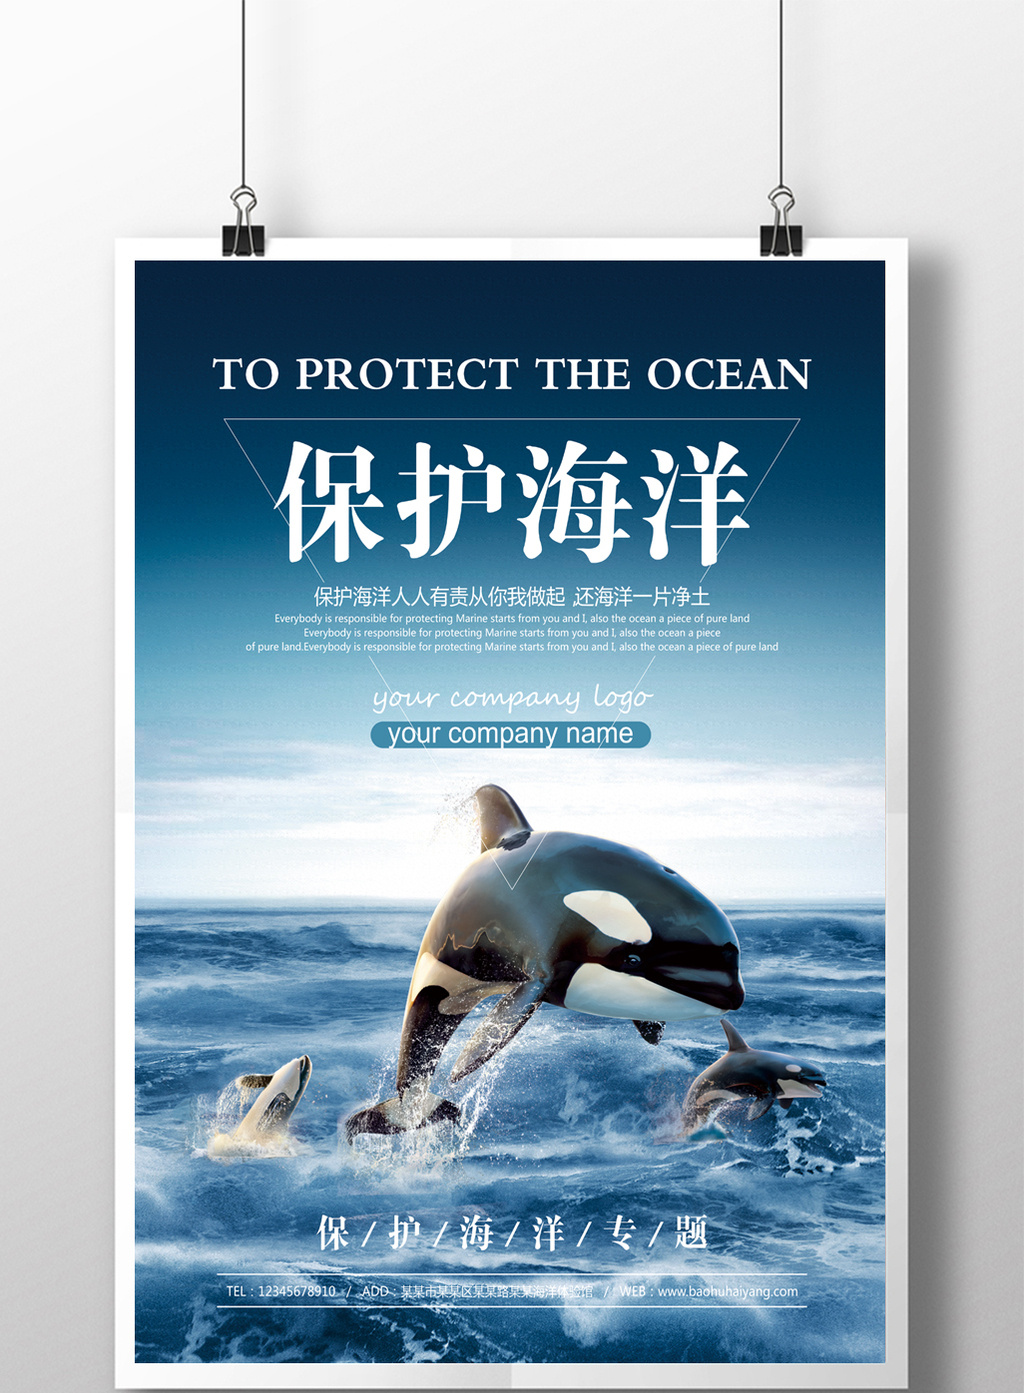 保护海洋公益活动宣传海报设计素材免费下载,本次作品主题是广告设计